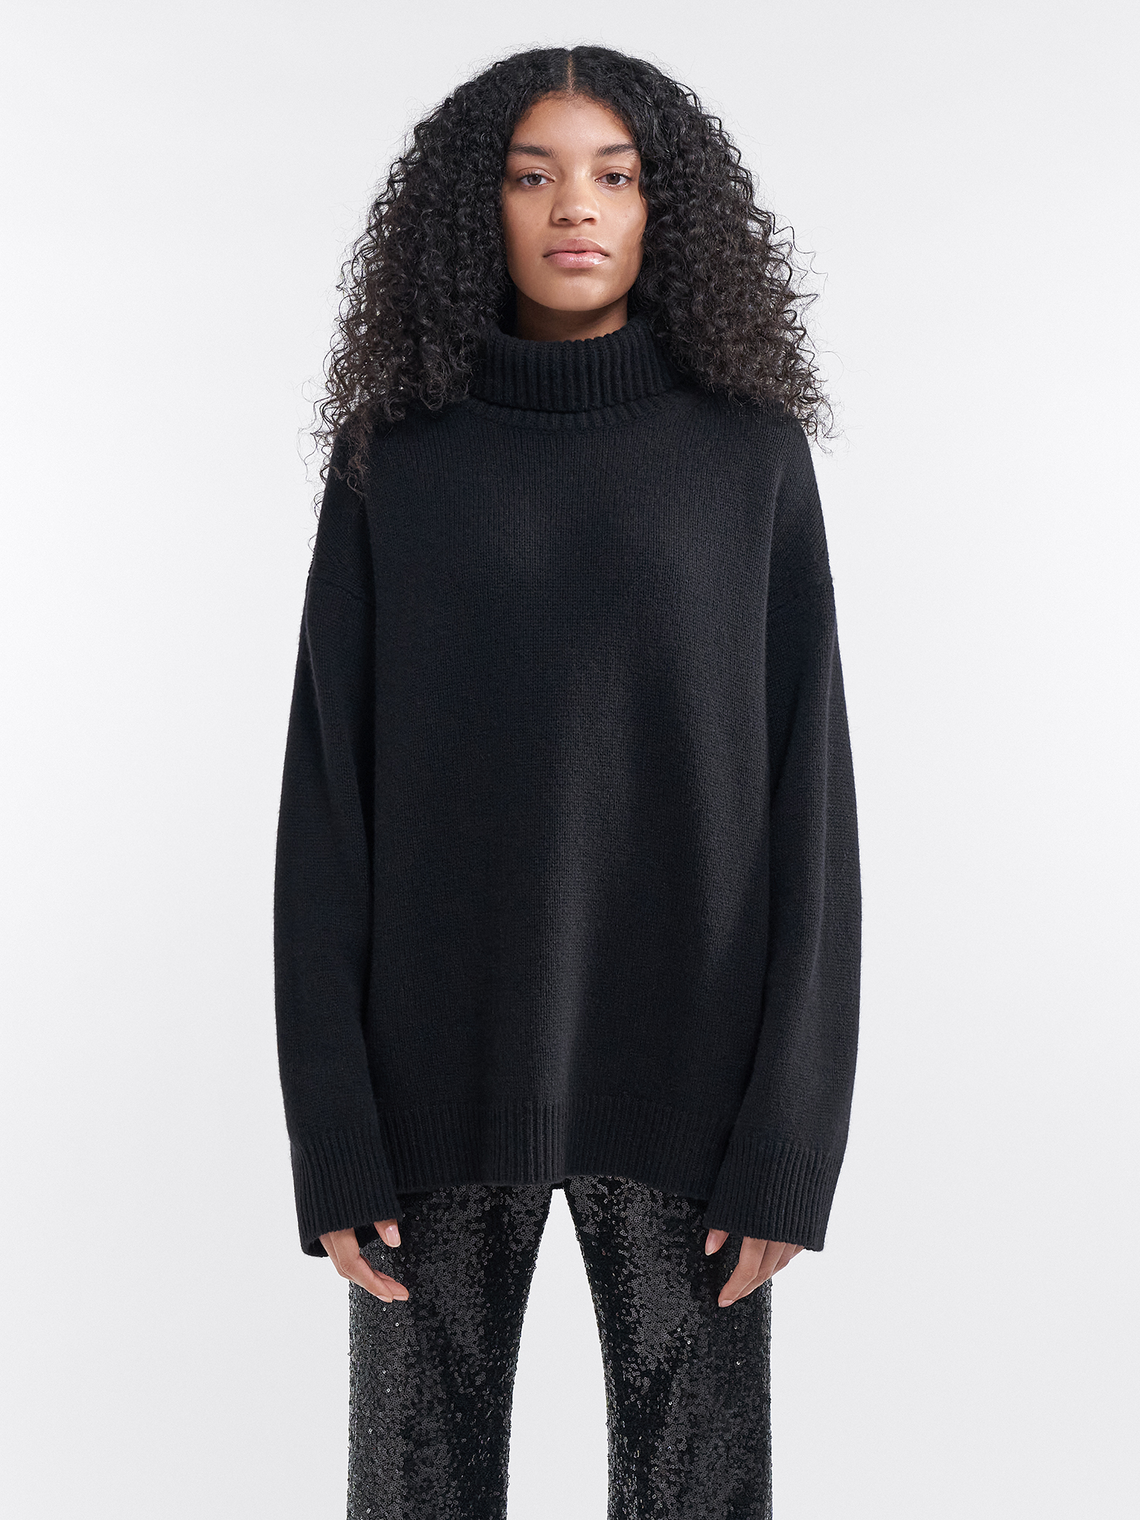 Wynona cashmere sweater by Filippa K - black